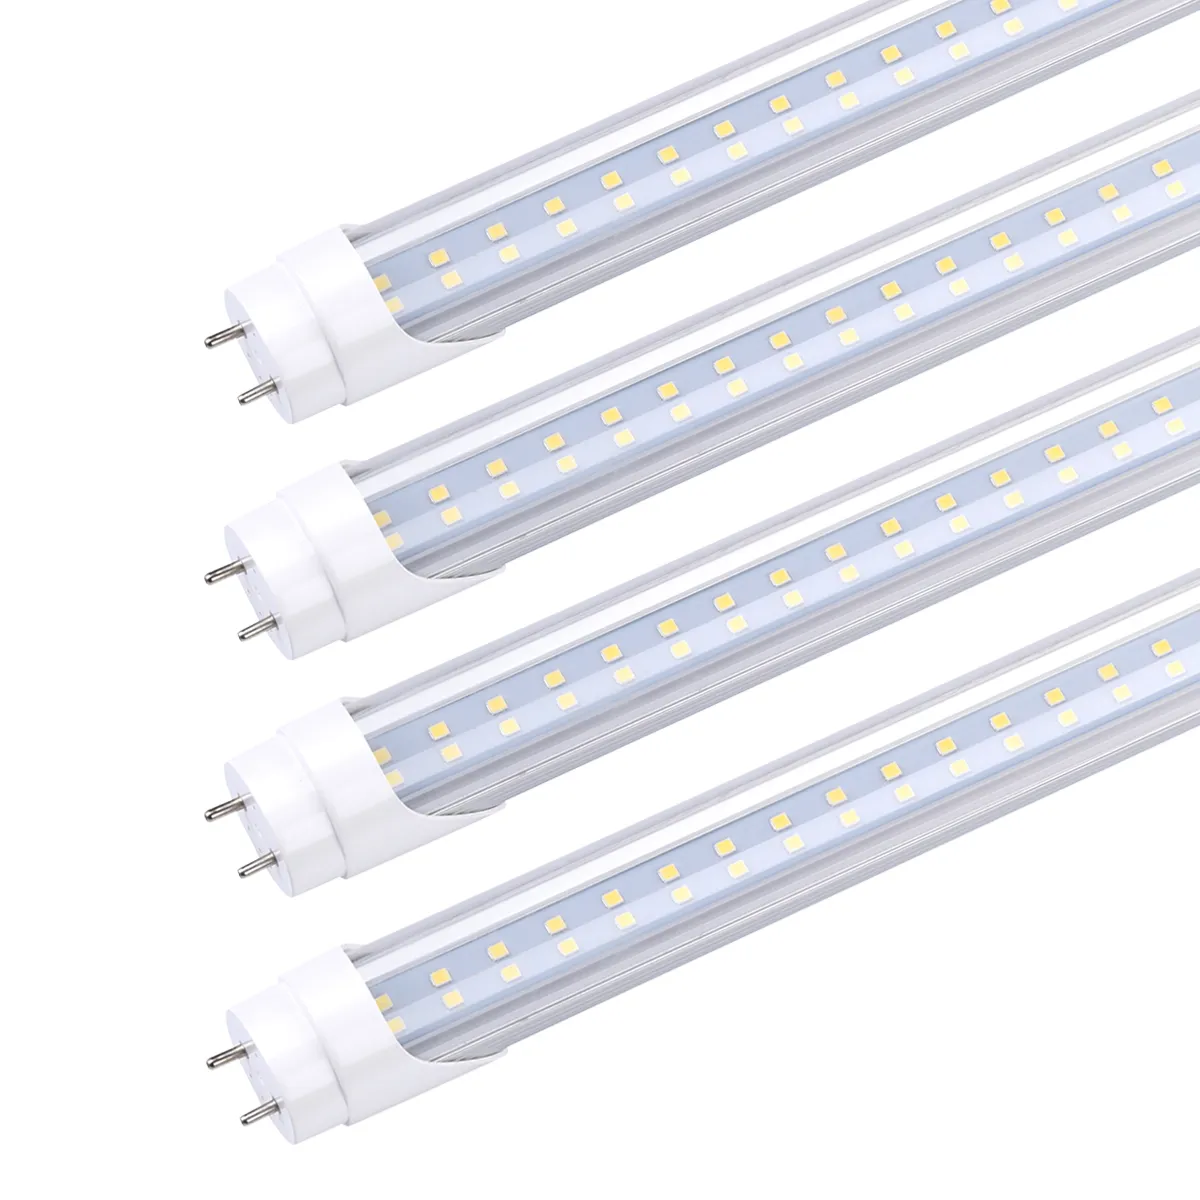 T8 LED-buislamp, 4FT 22W 28W, G13 Bi-Pin, T8 T10 T12 TL-verlichting, vervanging van lampen, ballastbypass, dubbelzijdig vermogen, doorzichtige afdekking, 4 voet winkelverlichting